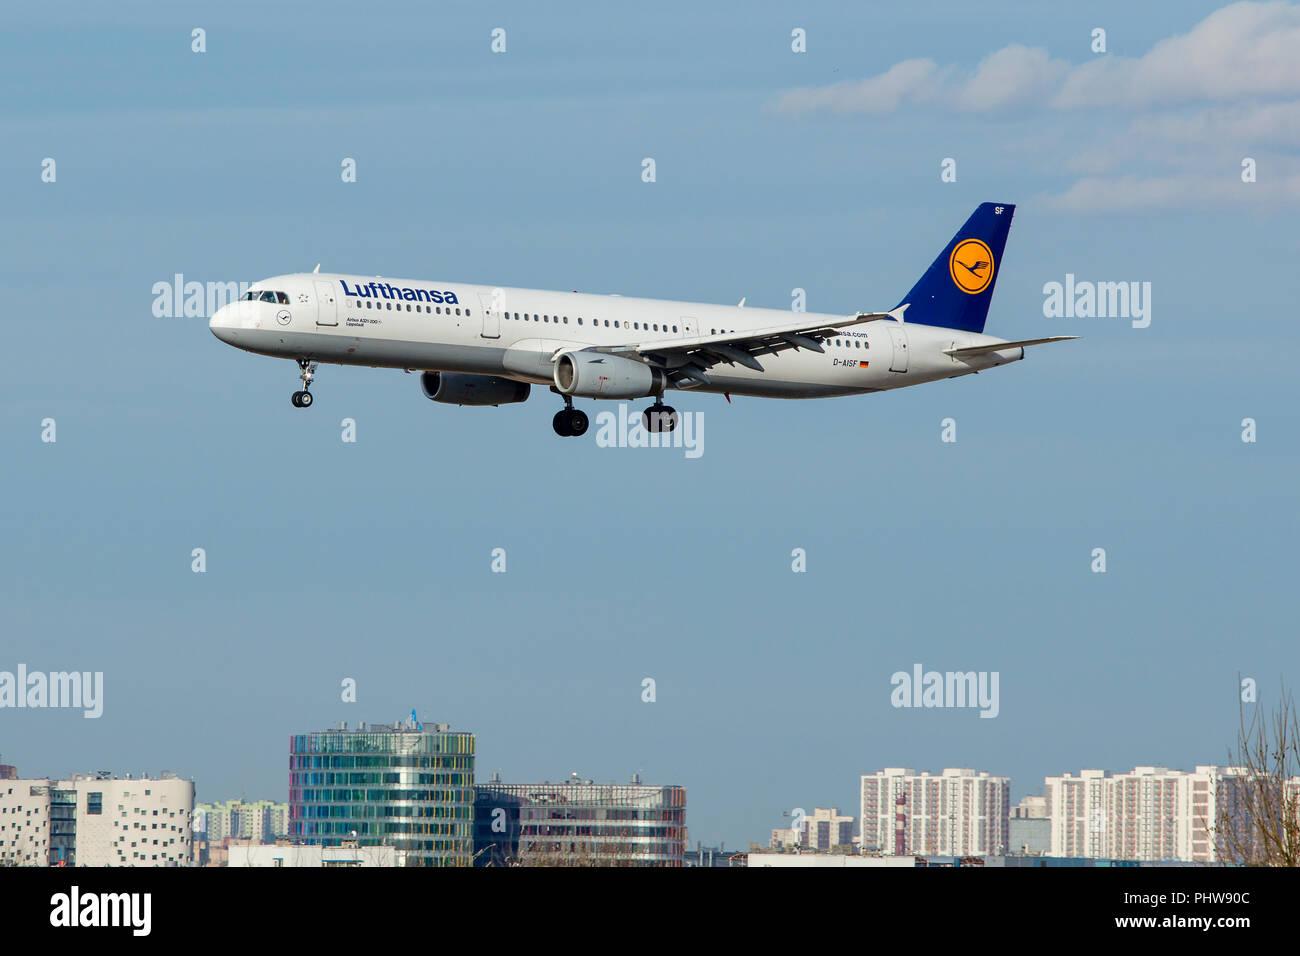 SAINT PETERSBURG, RUSSIE - 09 avril, 2017 : Aux commandes de l'Airbus A321-231 (D-AISF) compagnie aérienne "Lufthansa" Banque D'Images